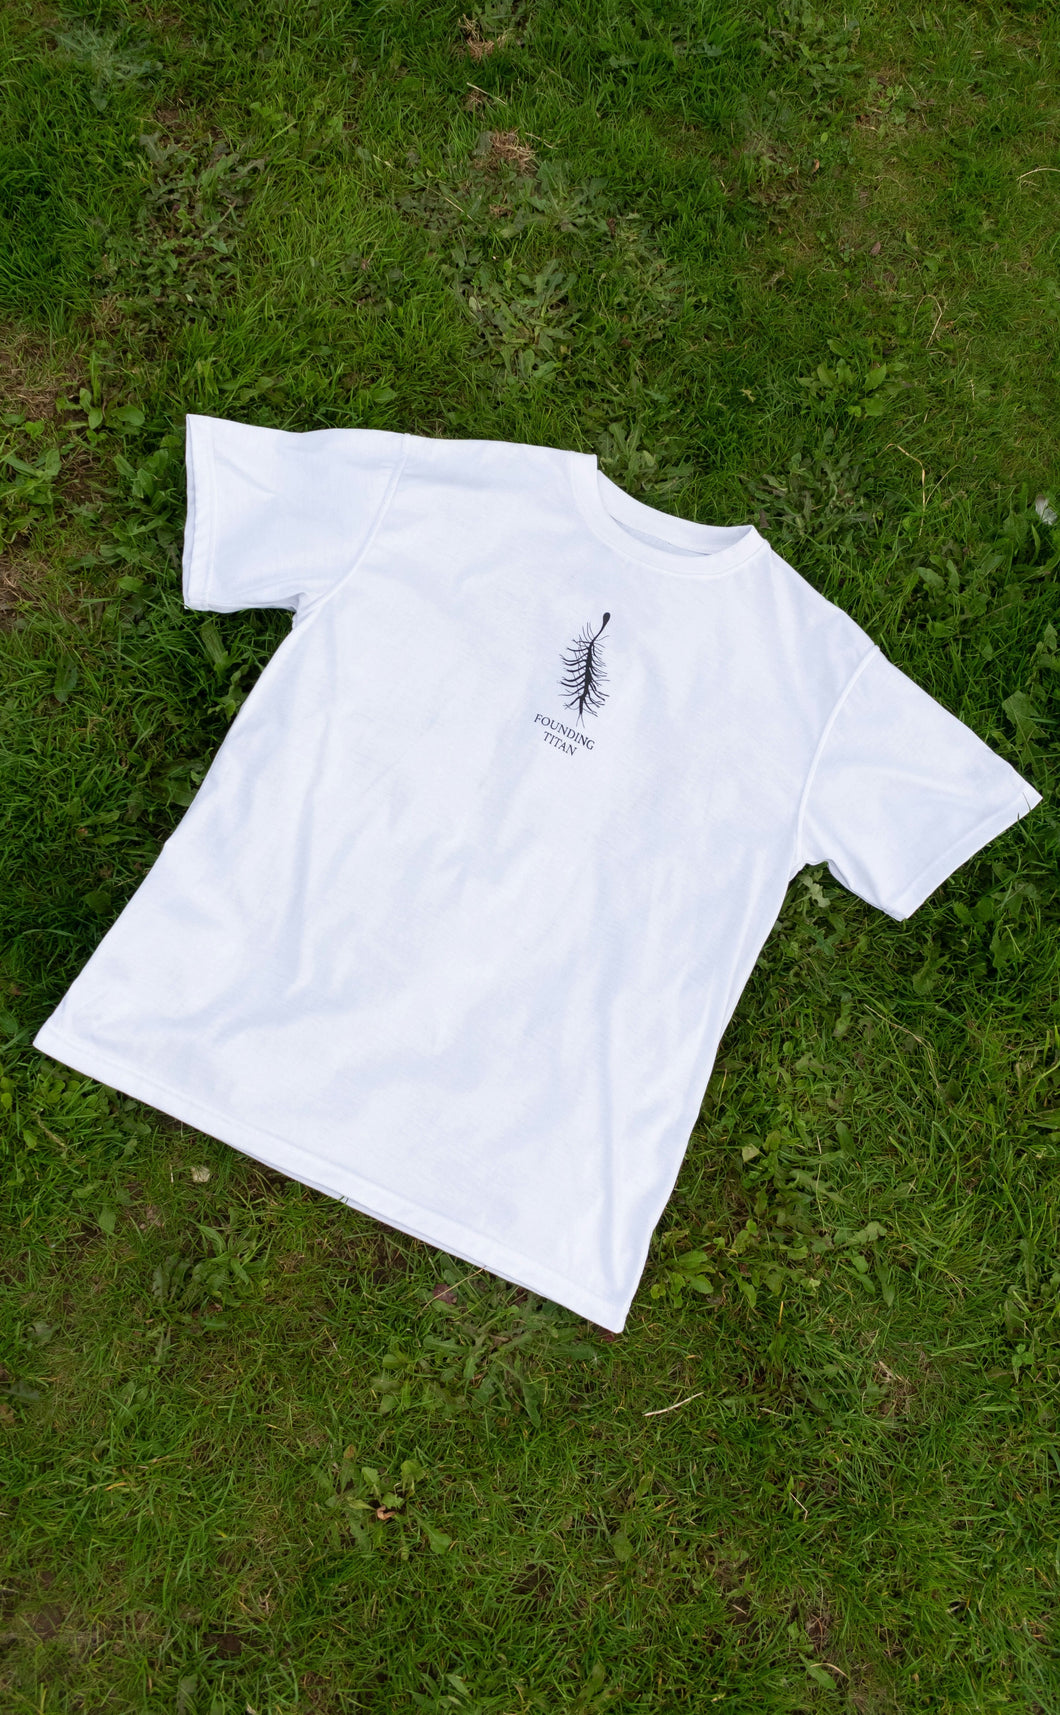 Eren Yeager Inspired White T-Shirt (Pre-Order)